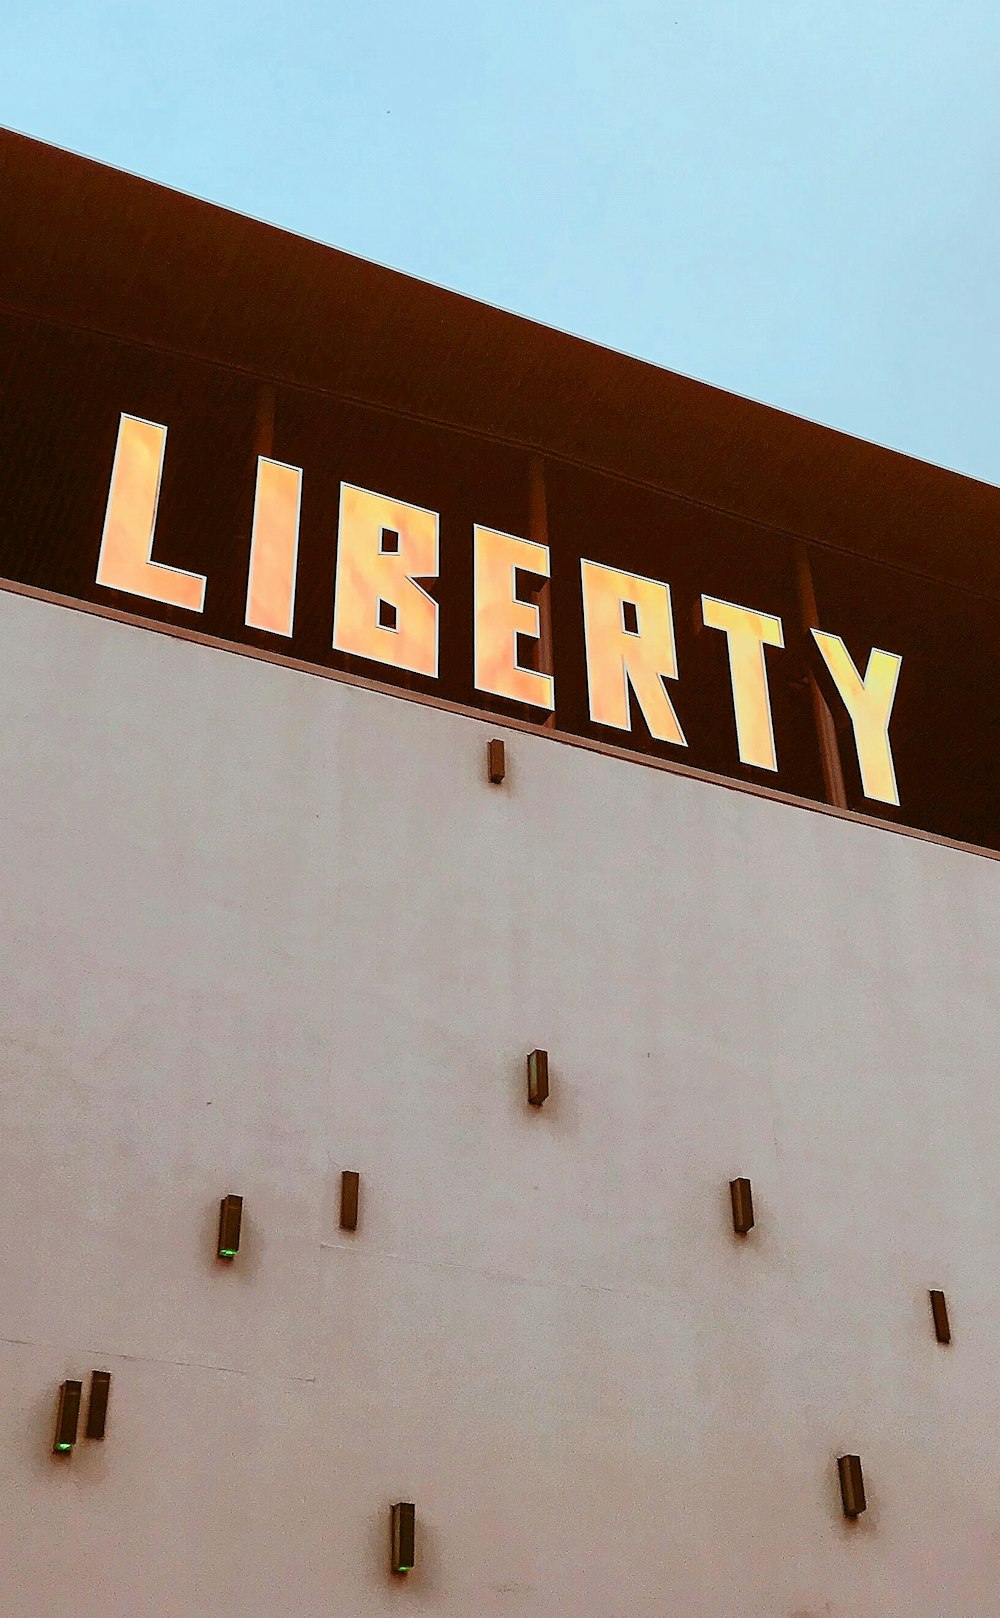 Signalétique Liberty sur le mur du bâtiment